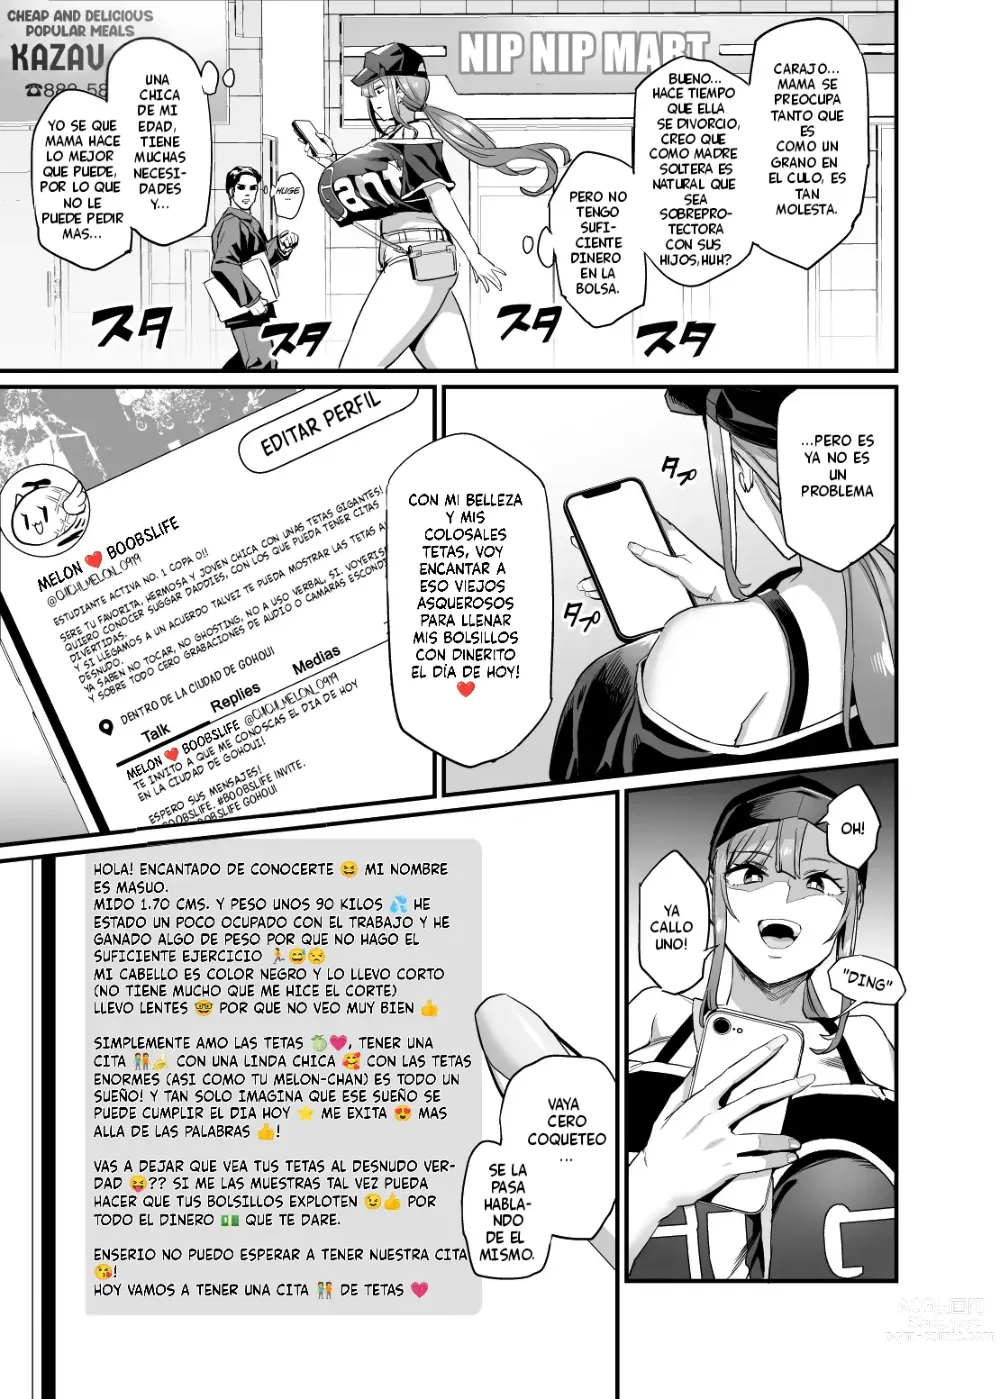 Page 5 of doujinshi La familia de las tetas cojibles #1 el encuentro con siuka